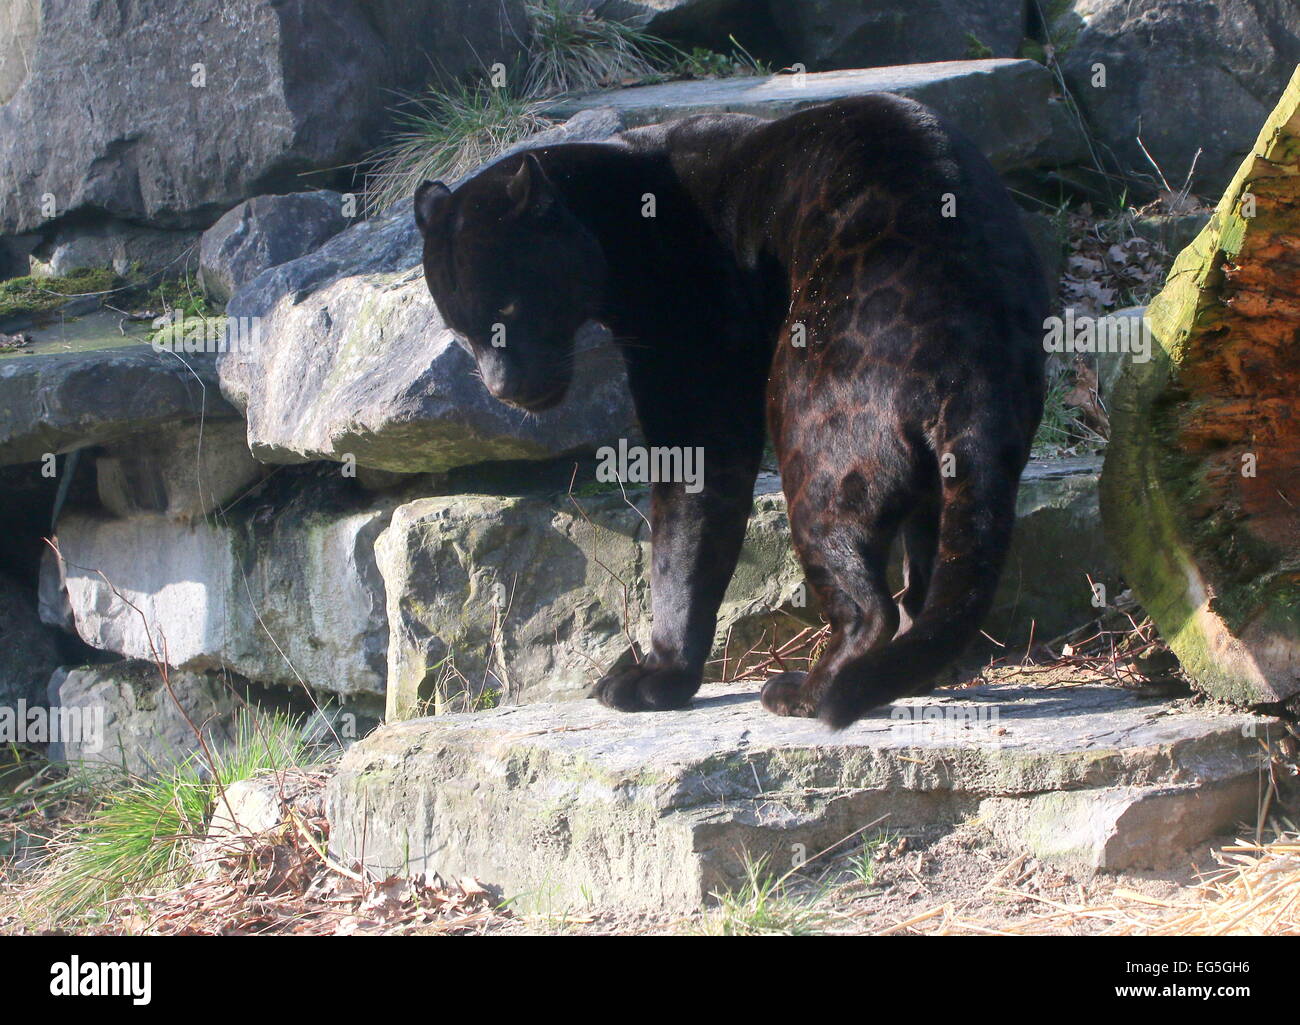 South American Melanistic Black Jaguar (Panthera onca) Stock Photo